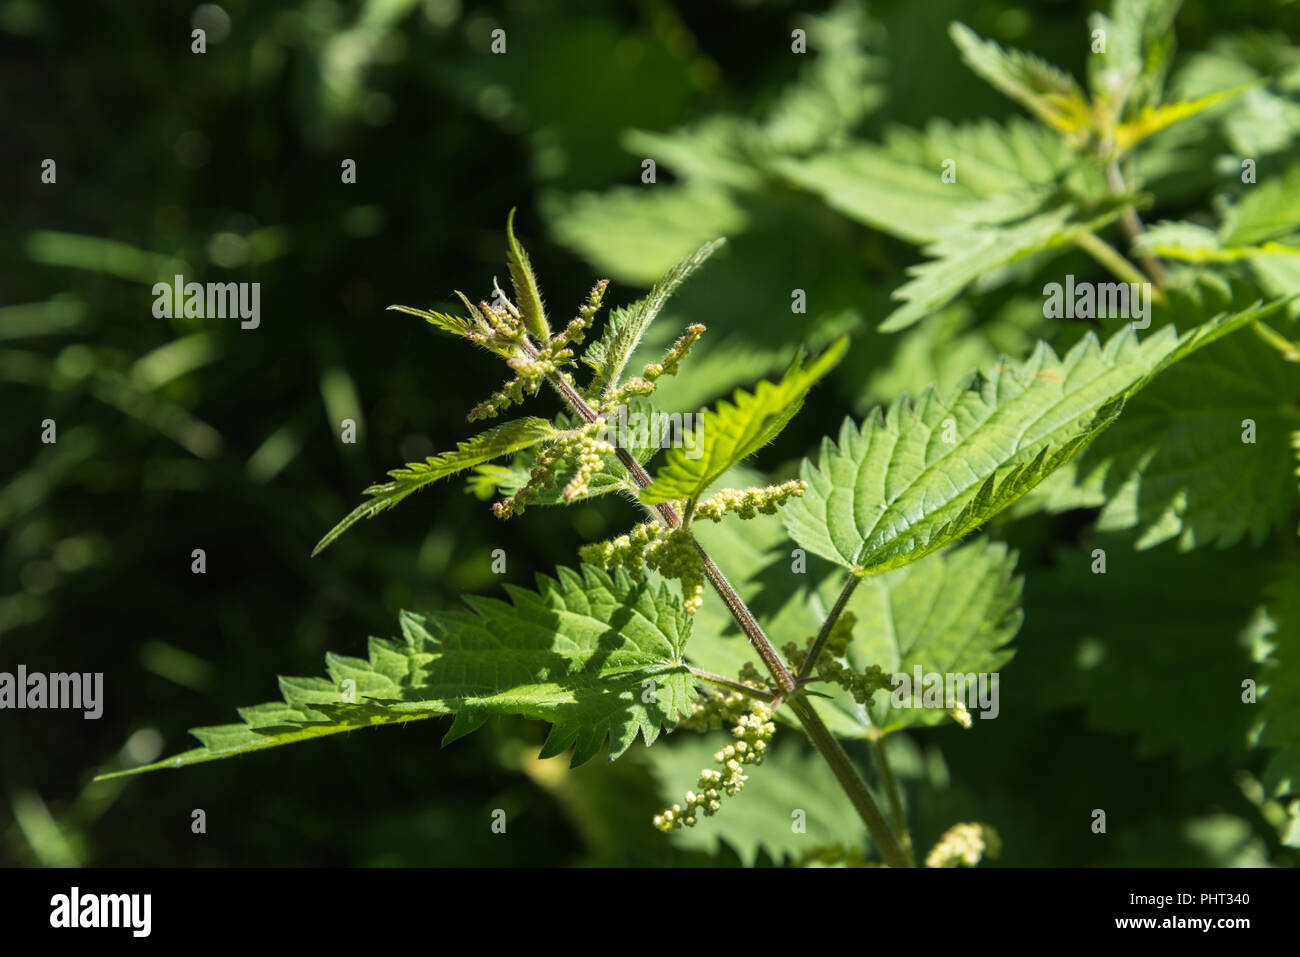 Nahaufnahme der Wachstum Tipp, Blätter und Blüten der gemeinsamen Brennnessel im August Sommer Sonnenlicht in eine wilde Wiese in England, Großbritannien. Stockfoto